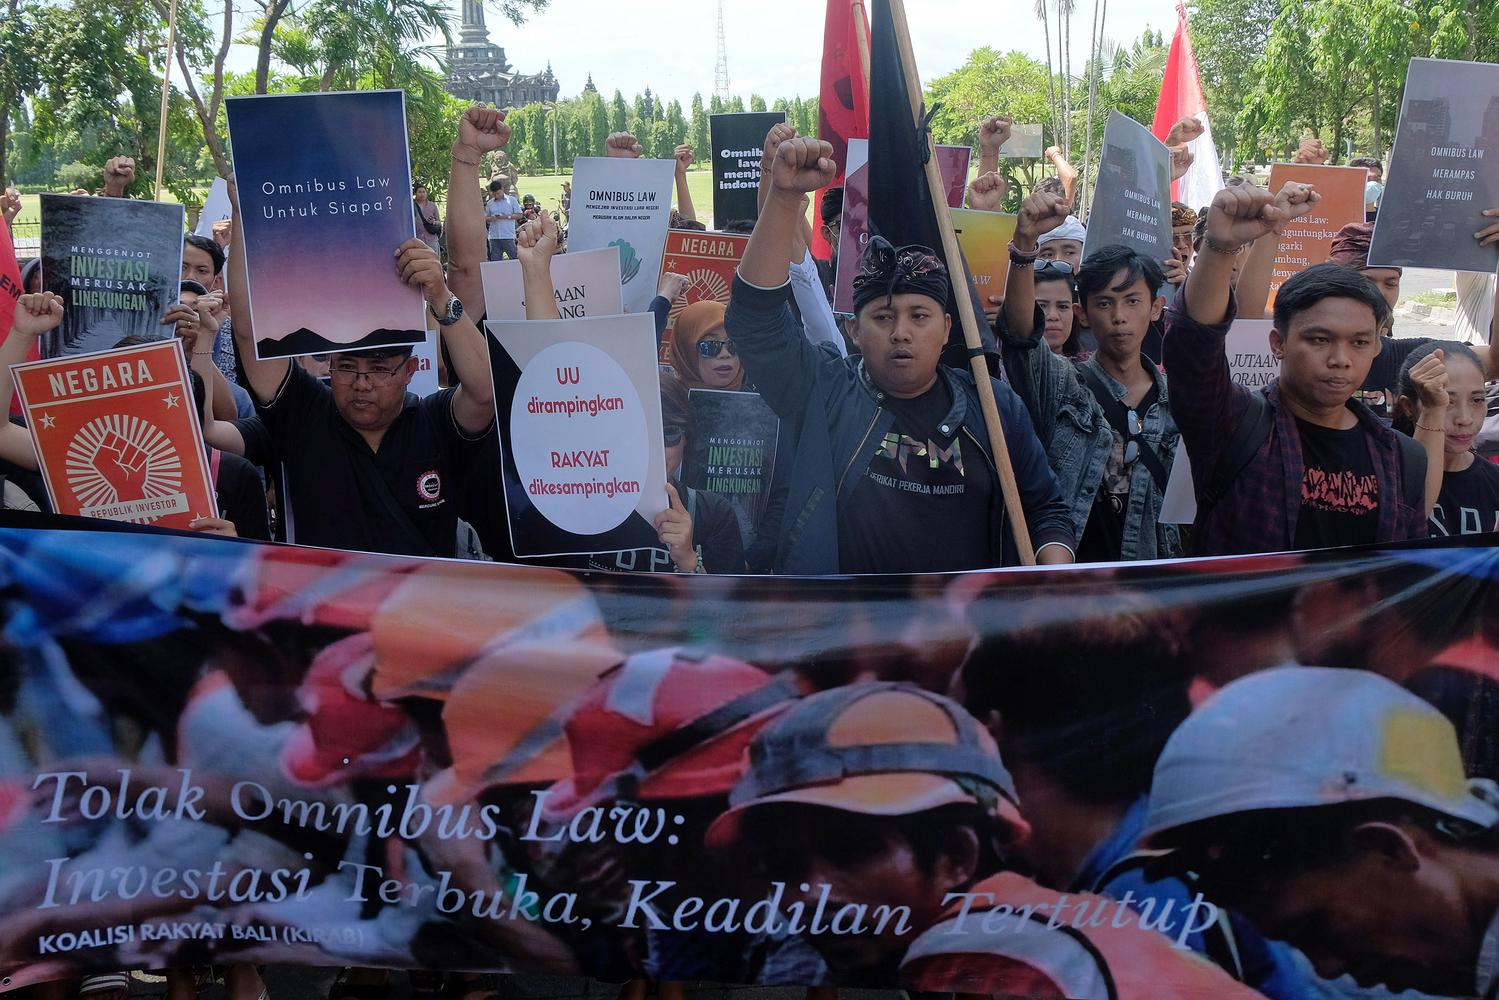 Anggota Koalisi Rakyat Bali (KIRAB) meneriakan yel-yel dalam unjuk rasa penolakan RUU Omnibus Law Cipta Lapangan Kerja di Denpasar, Bali, Kamis (6/2/2020). Mereka menolak RUU Omnibus Law Cipta Lapangan Kerja karena dinilai berpotensi merugikan kalangan bu